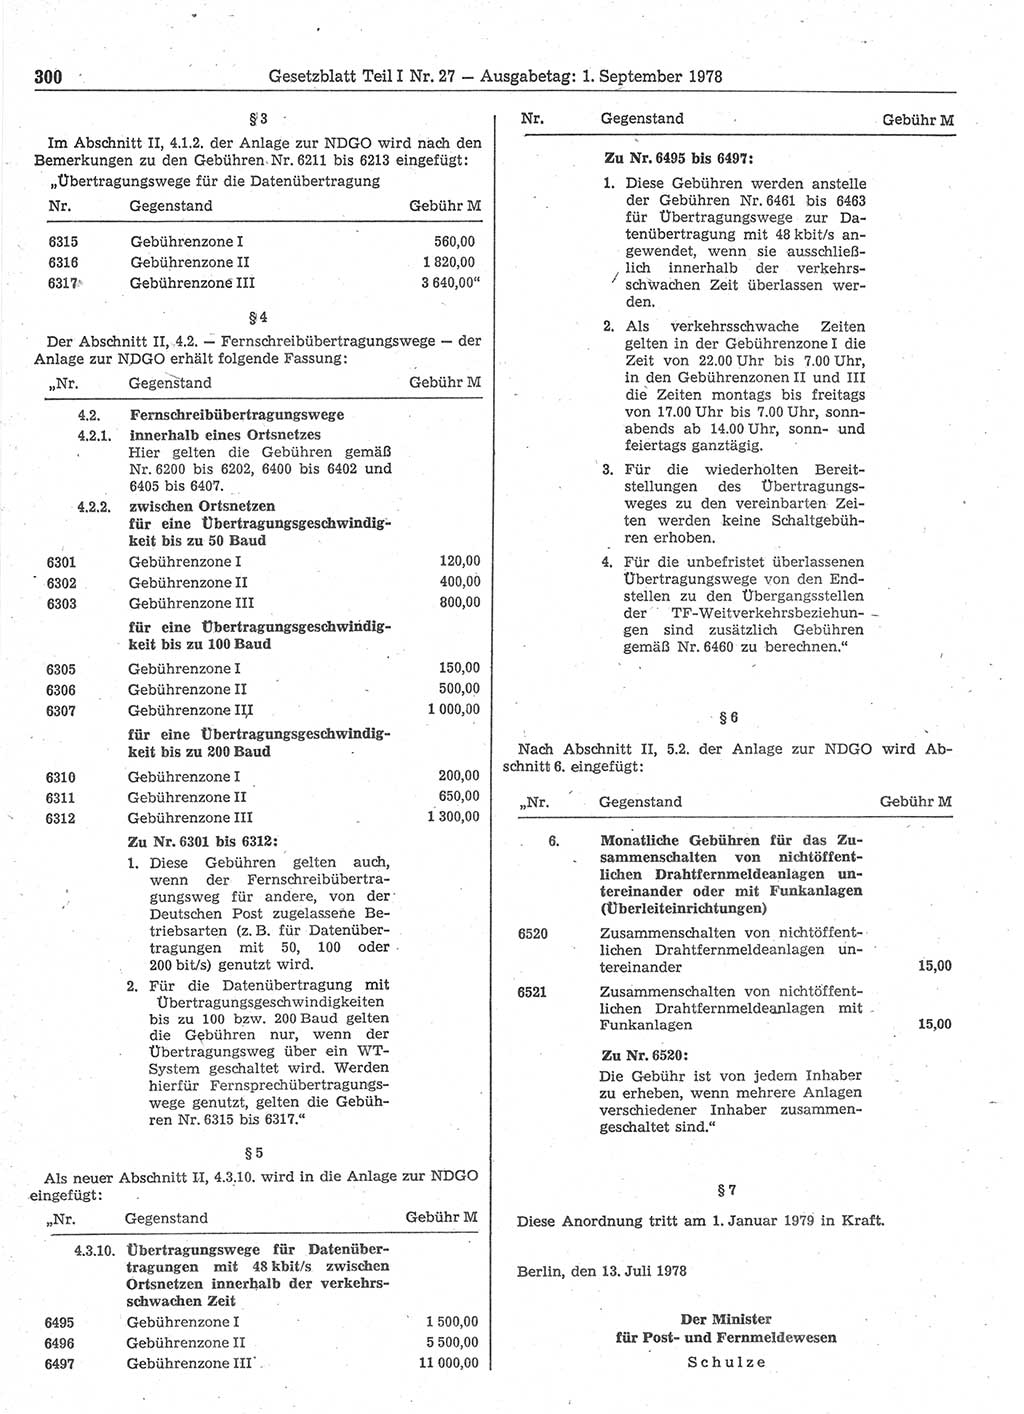 Gesetzblatt (GBl.) der Deutschen Demokratischen Republik (DDR) Teil Ⅰ 1978, Seite 300 (GBl. DDR Ⅰ 1978, S. 300)